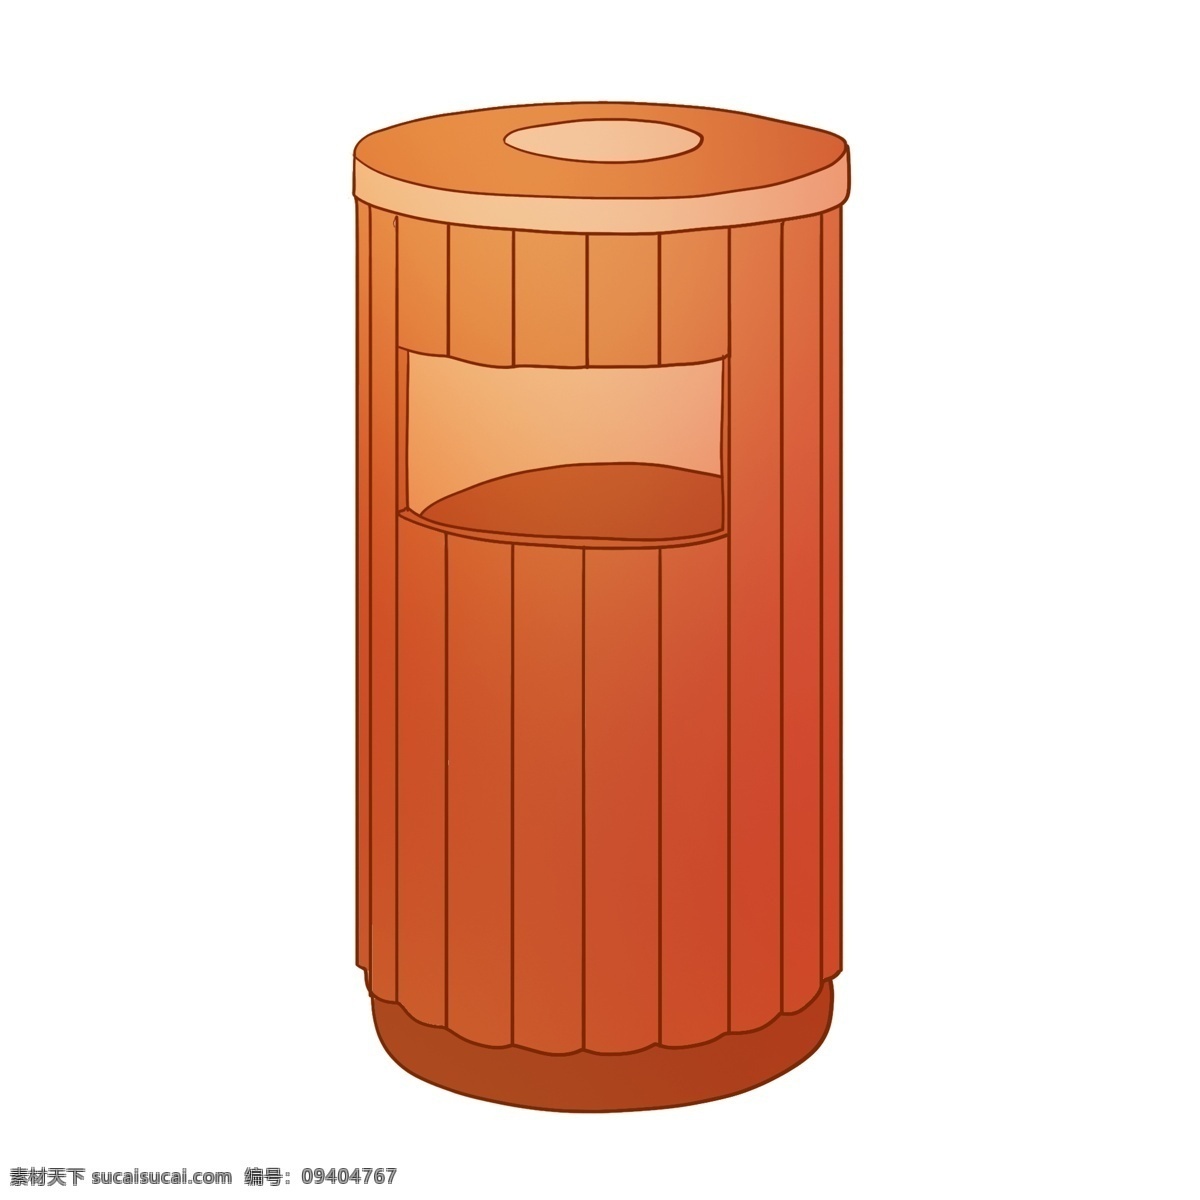 橘红色 环保 垃圾桶 插画 橘红色垃圾桶 立式垃圾桶 圆筒状垃圾桶 卡通垃圾桶 扔垃圾的桶子